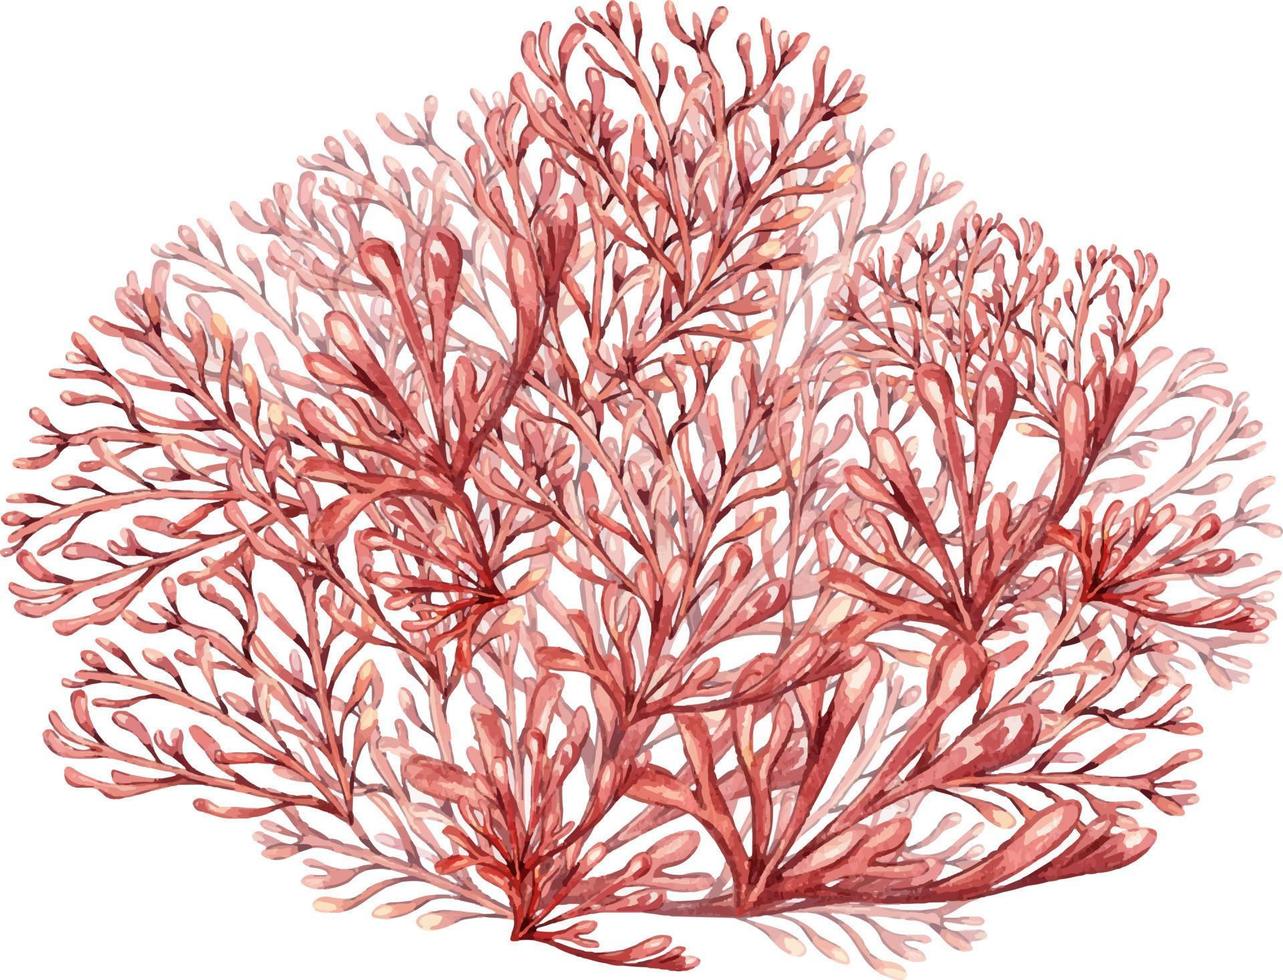 zee planten, koraal waterverf illustratie geïsoleerd Aan wit achtergrond. roze agar agar zeewier, phyllophora hand- getrokken. ontwerp element voor pakket, label, reclame, inpakken, marinier verzameling vector